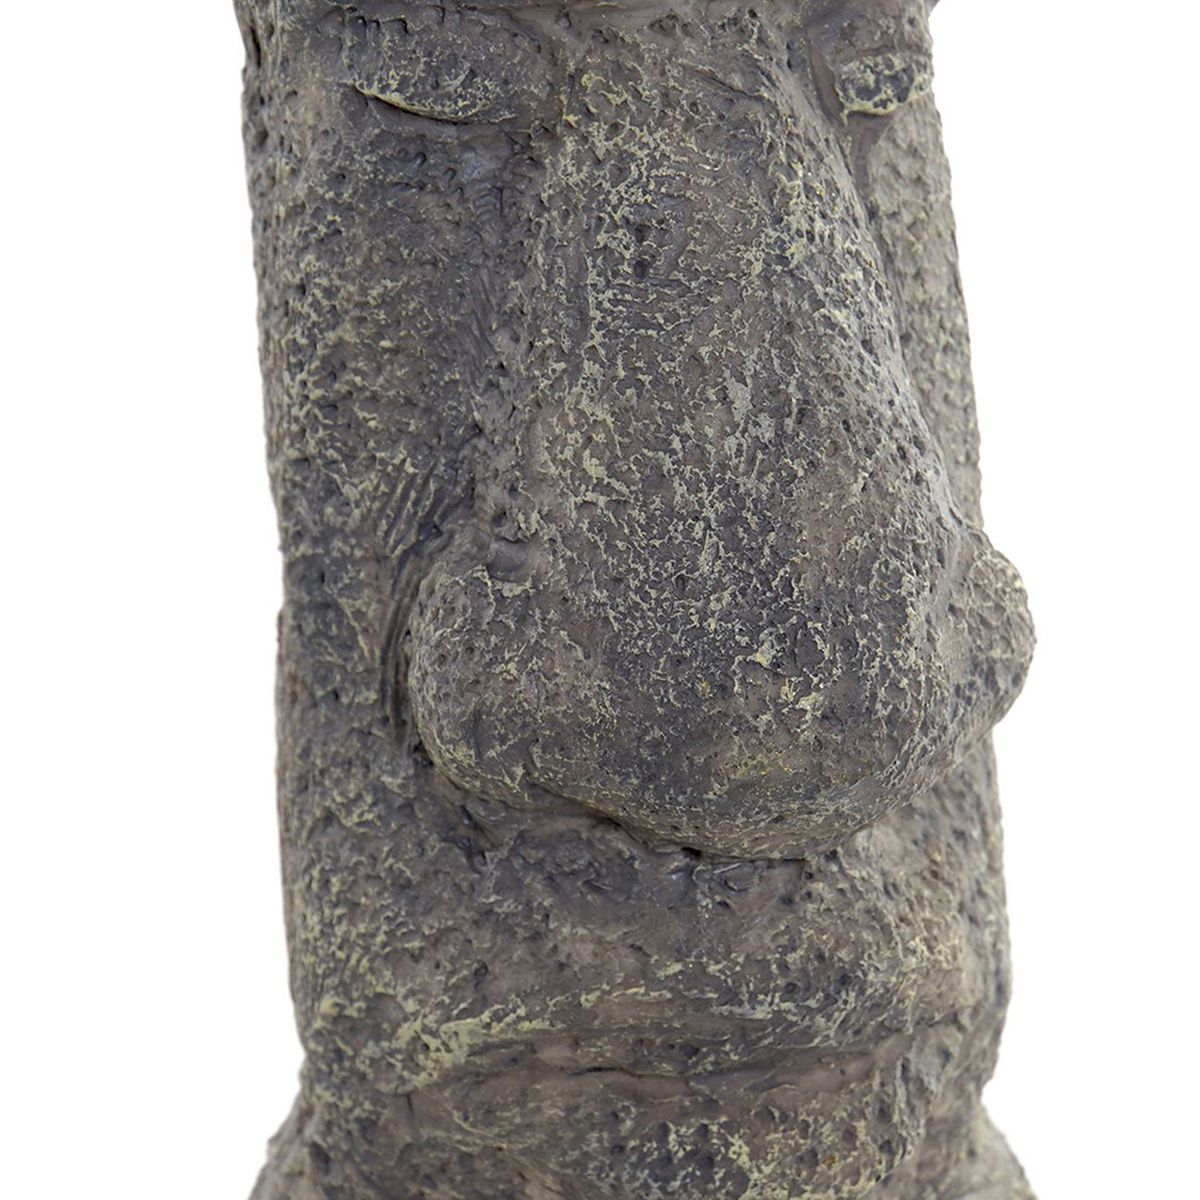 MOAI Statue